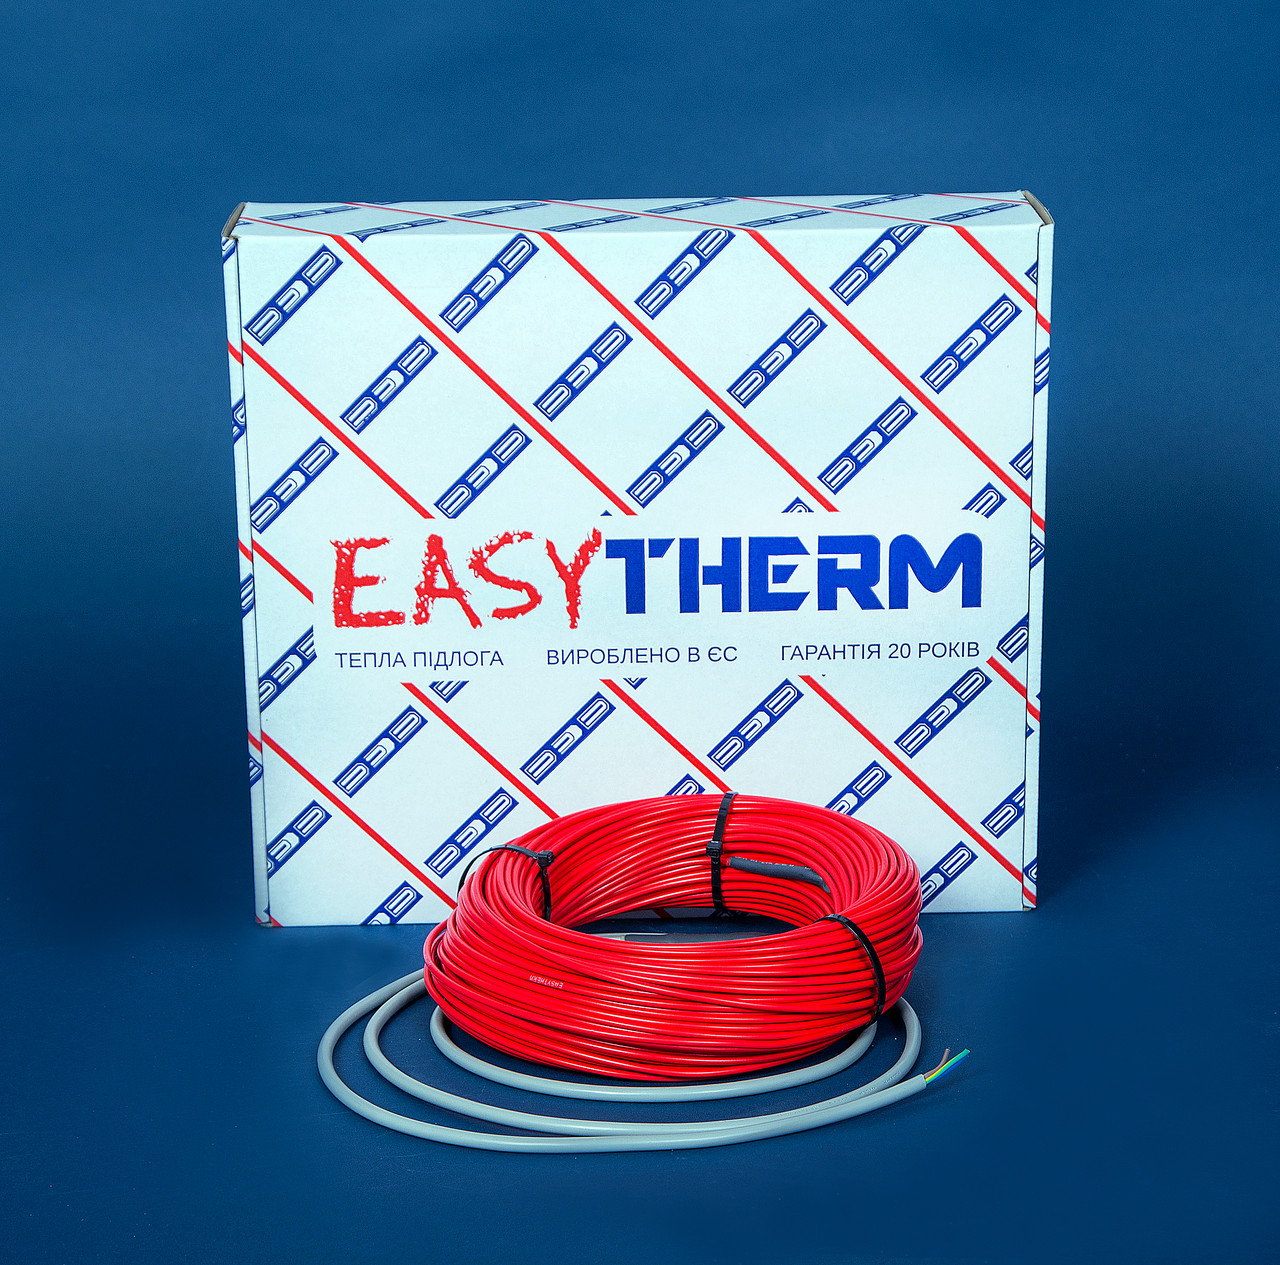 Электрический теплый пол EasyTherm Easycable 16.0 отзывы - изображения 5